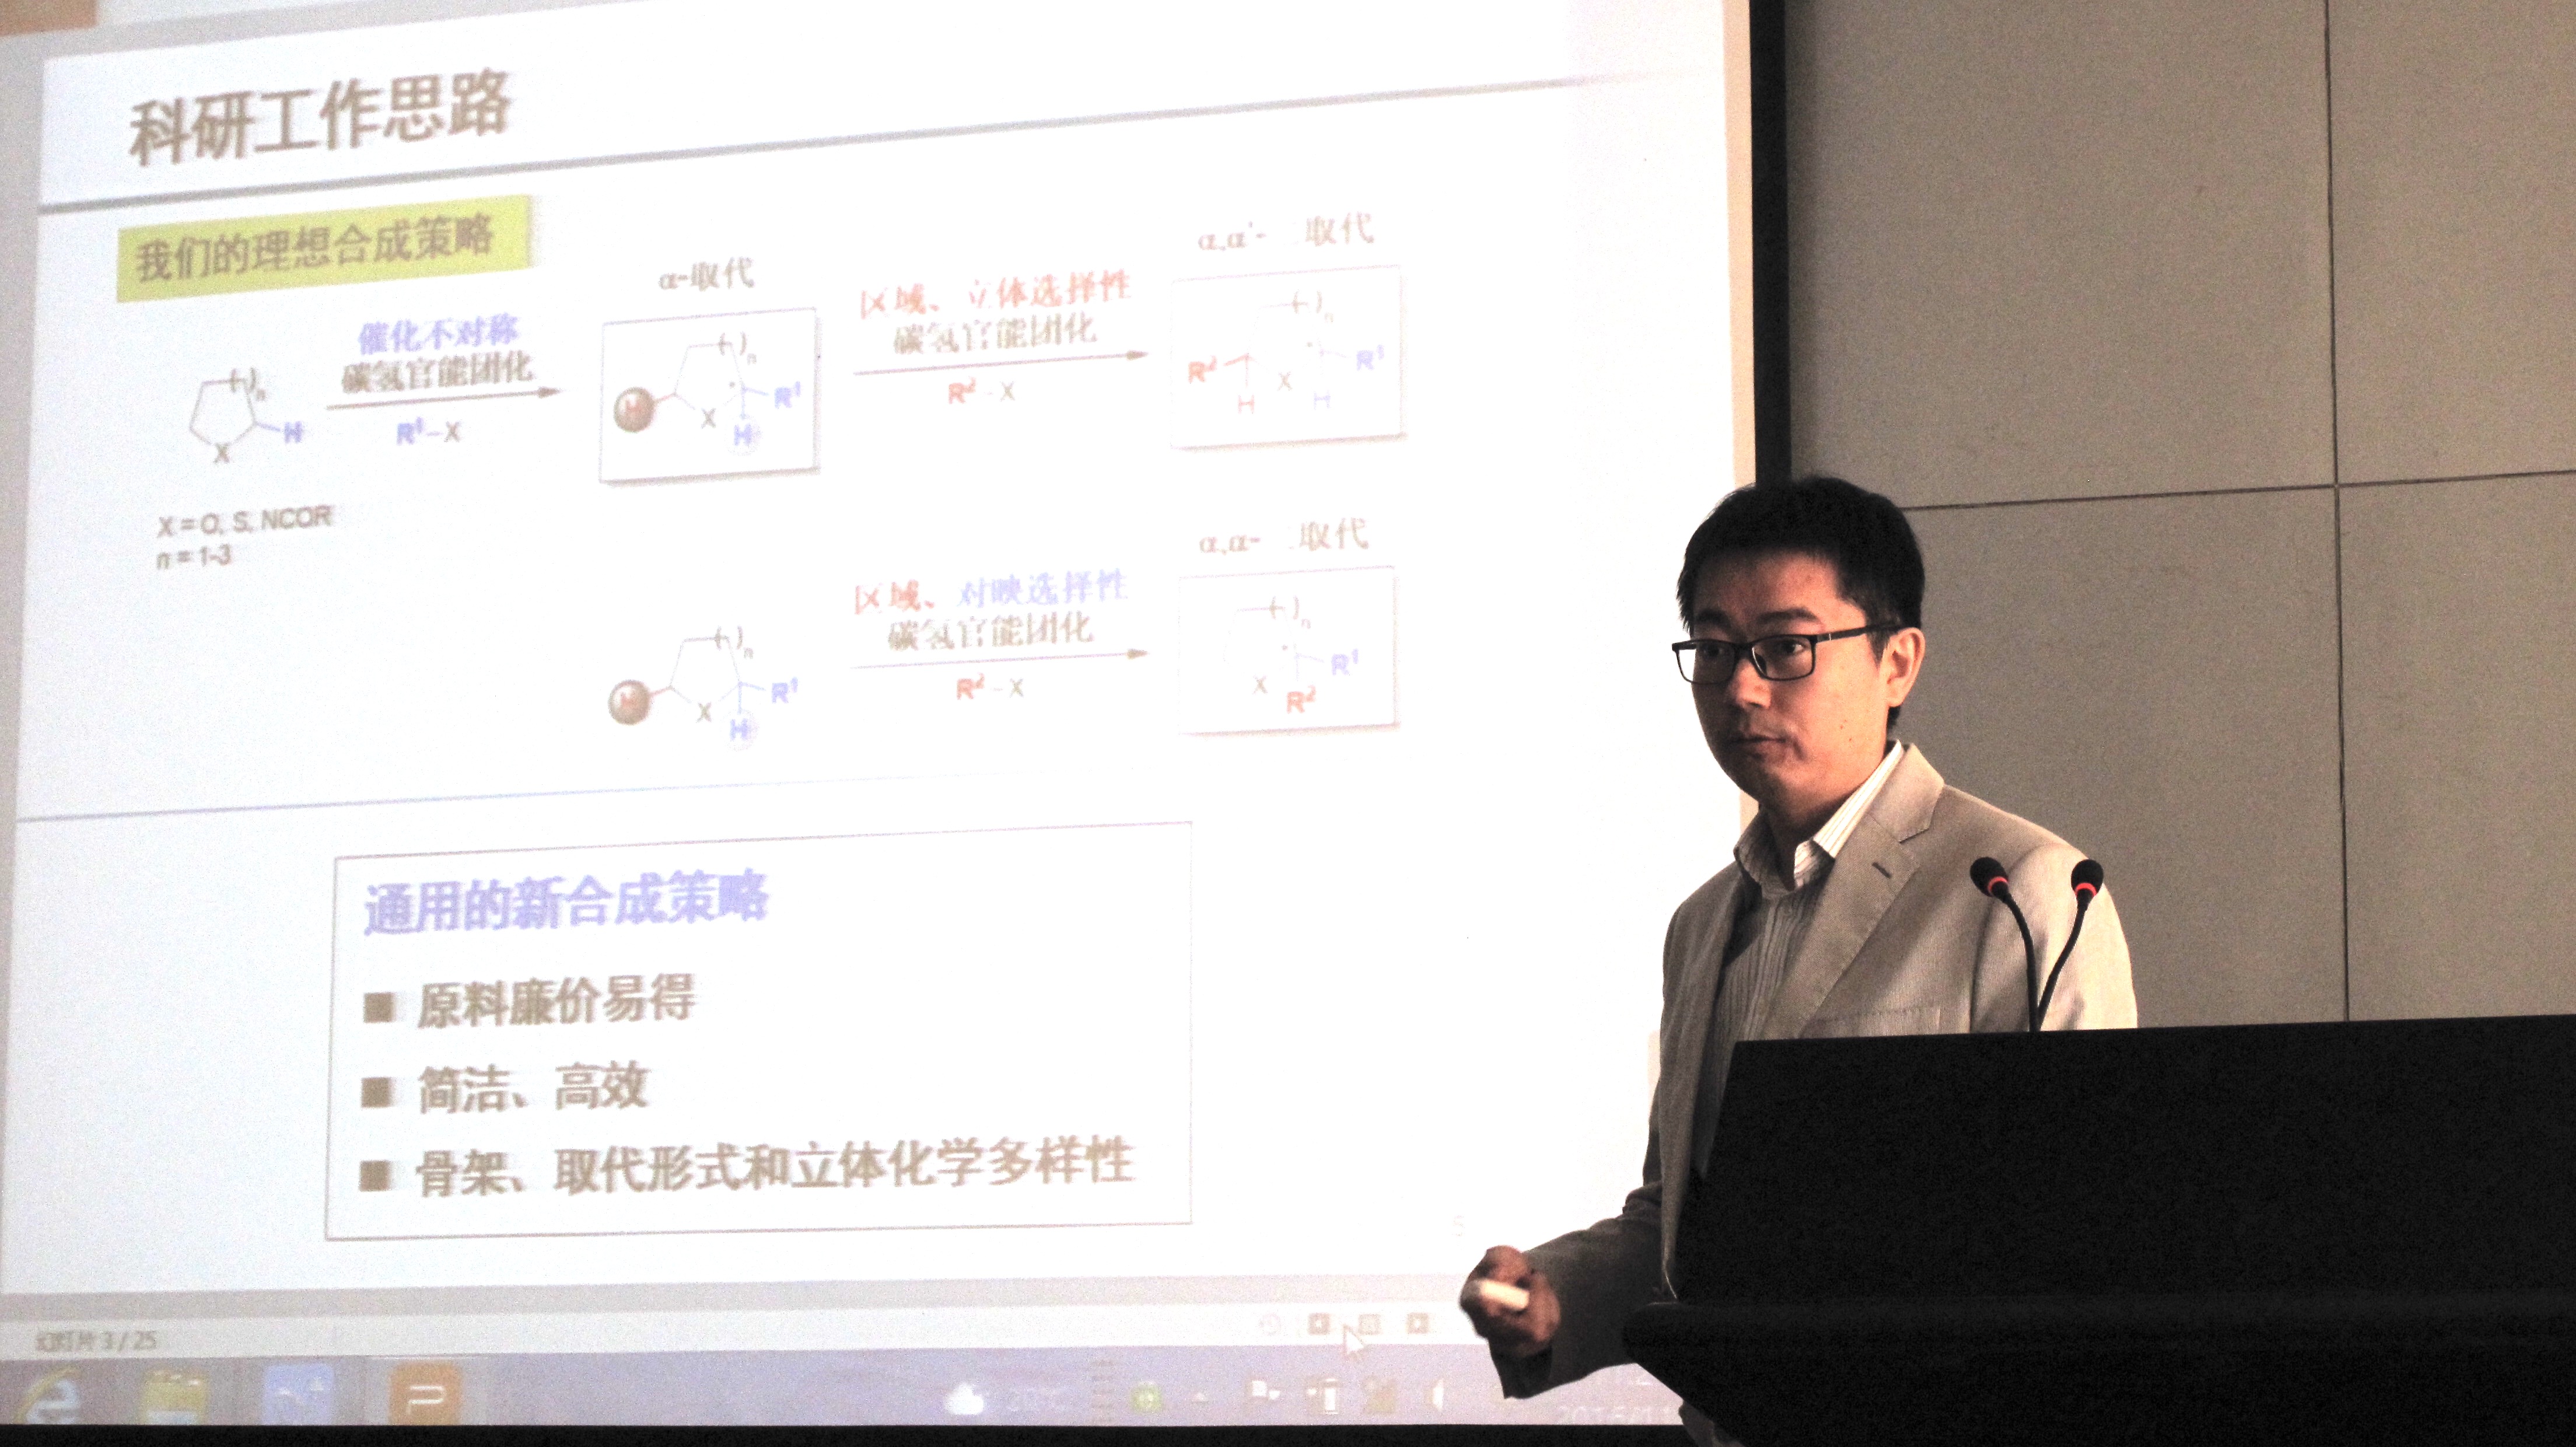 上海交通大学于烨、山东大学刘磊应邀到化学与药学学院进行学术交流